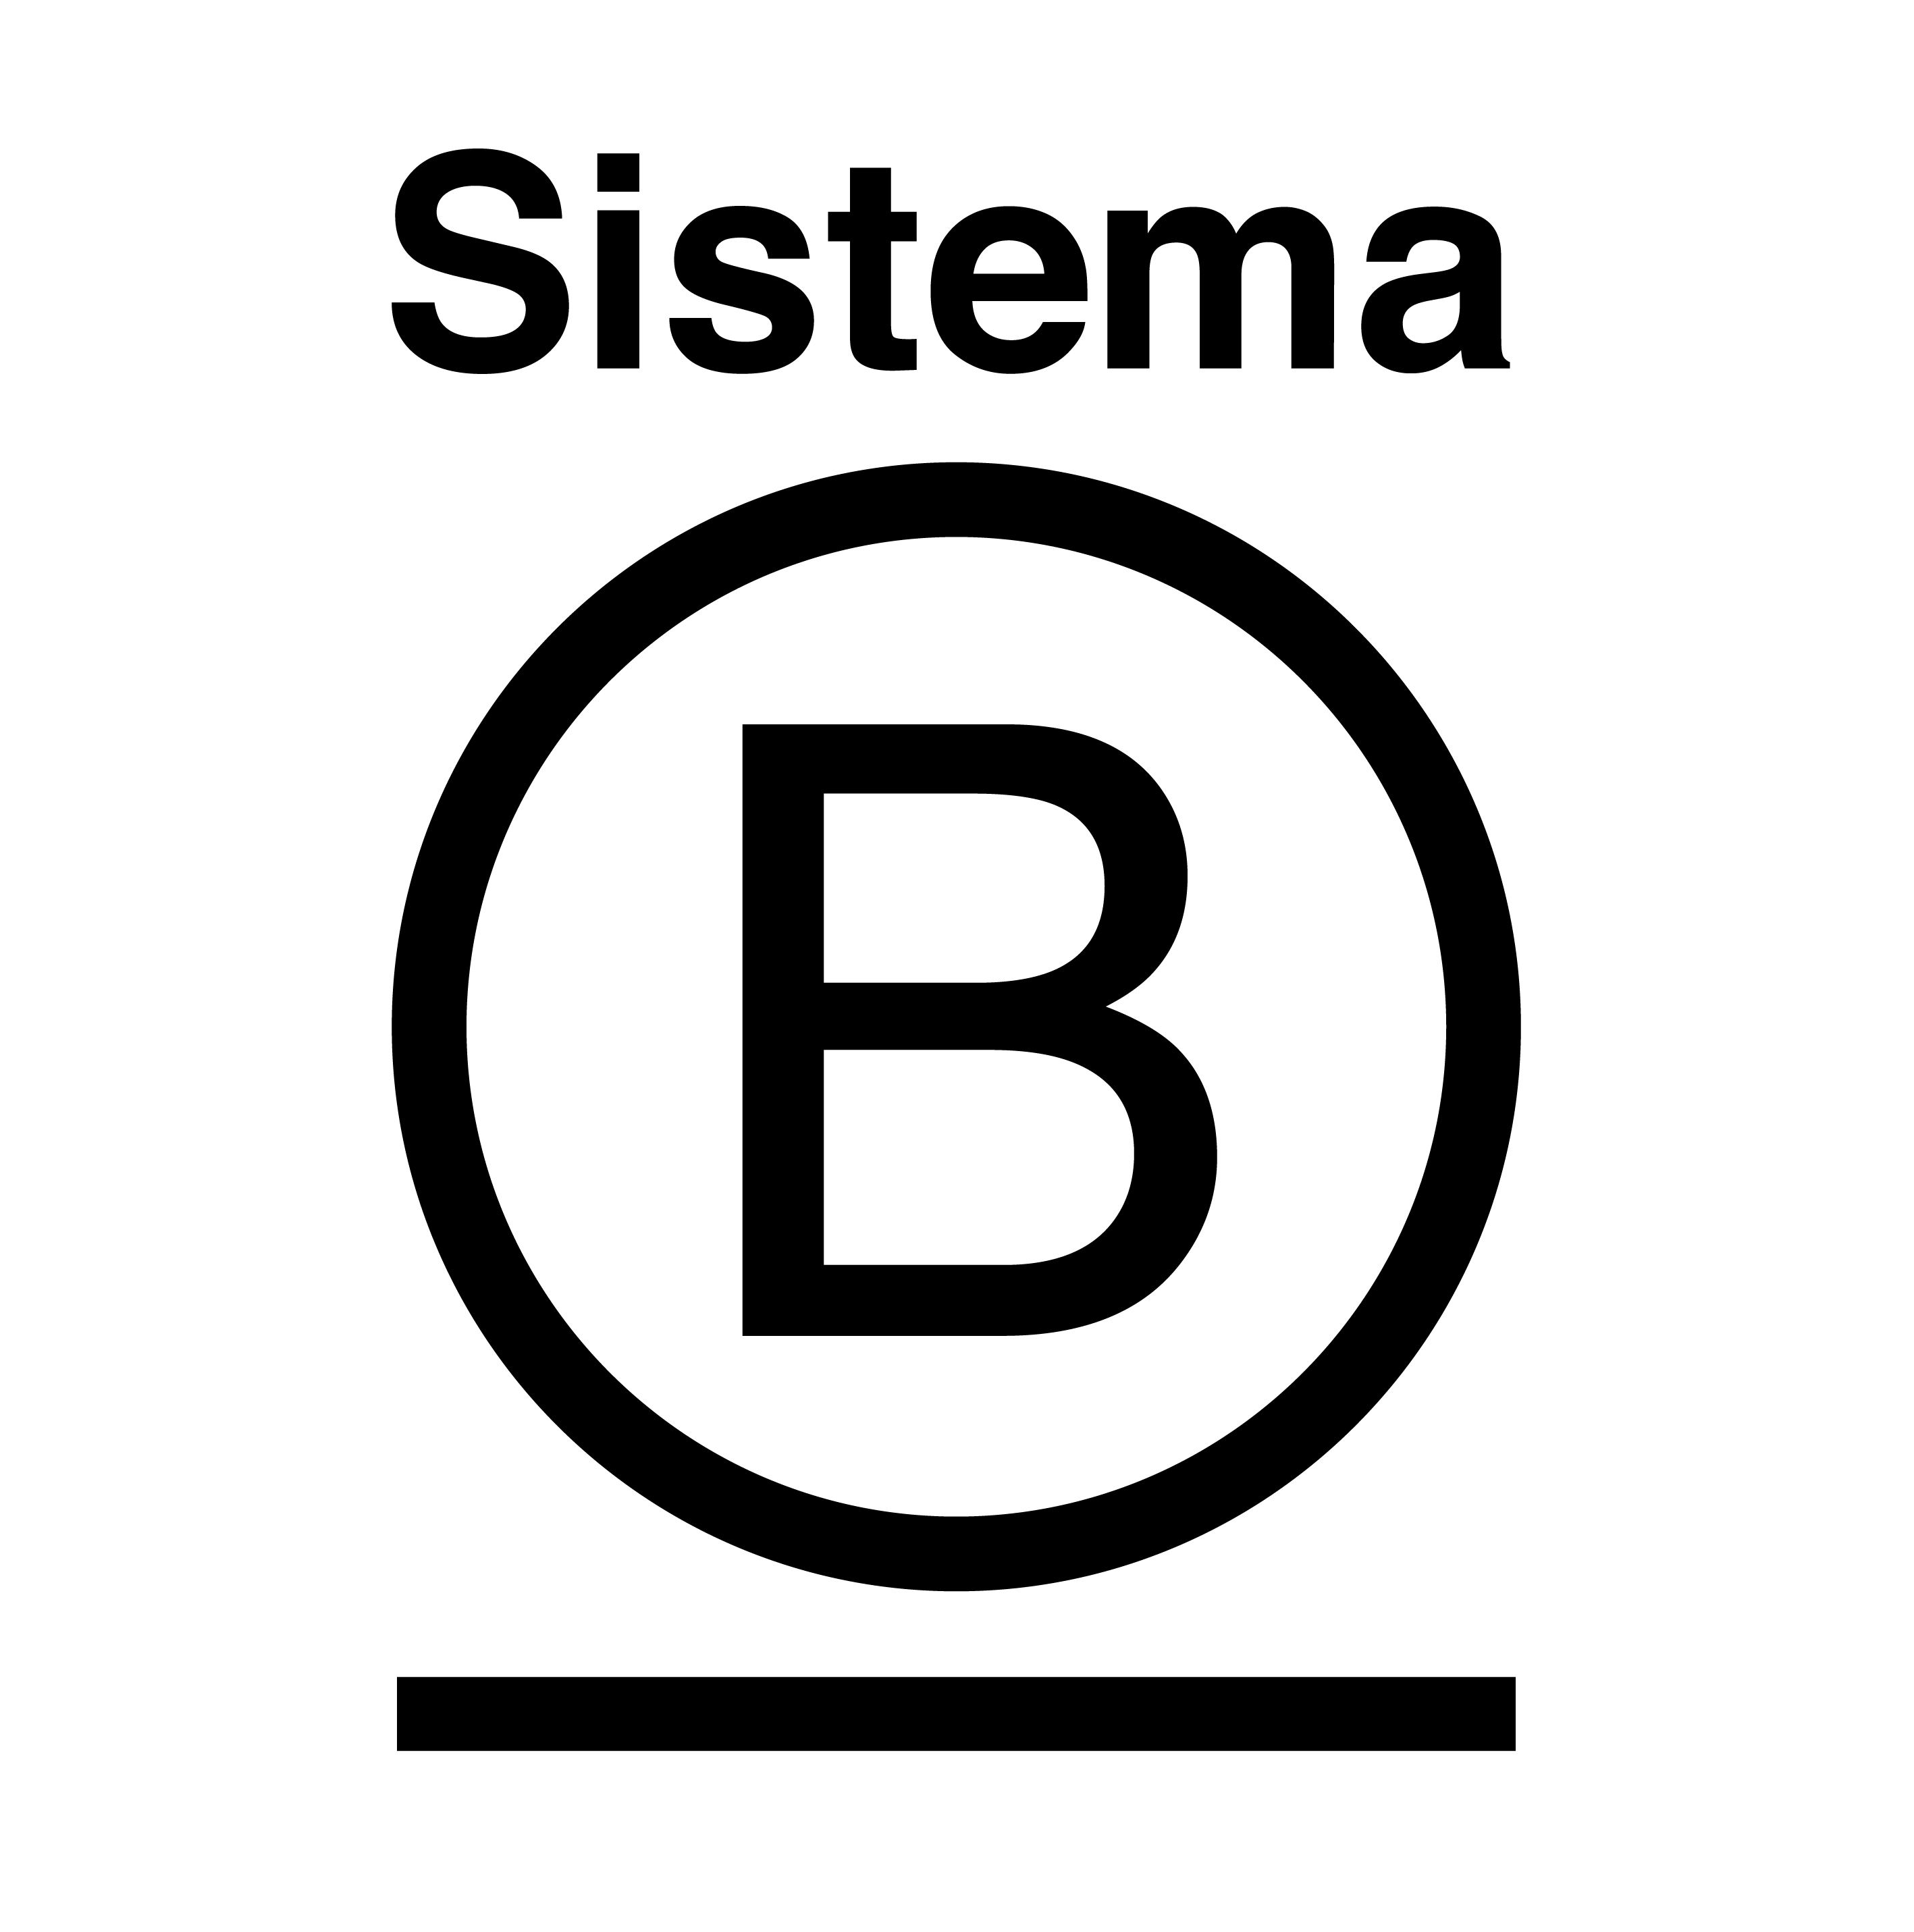 Logo Sistema B